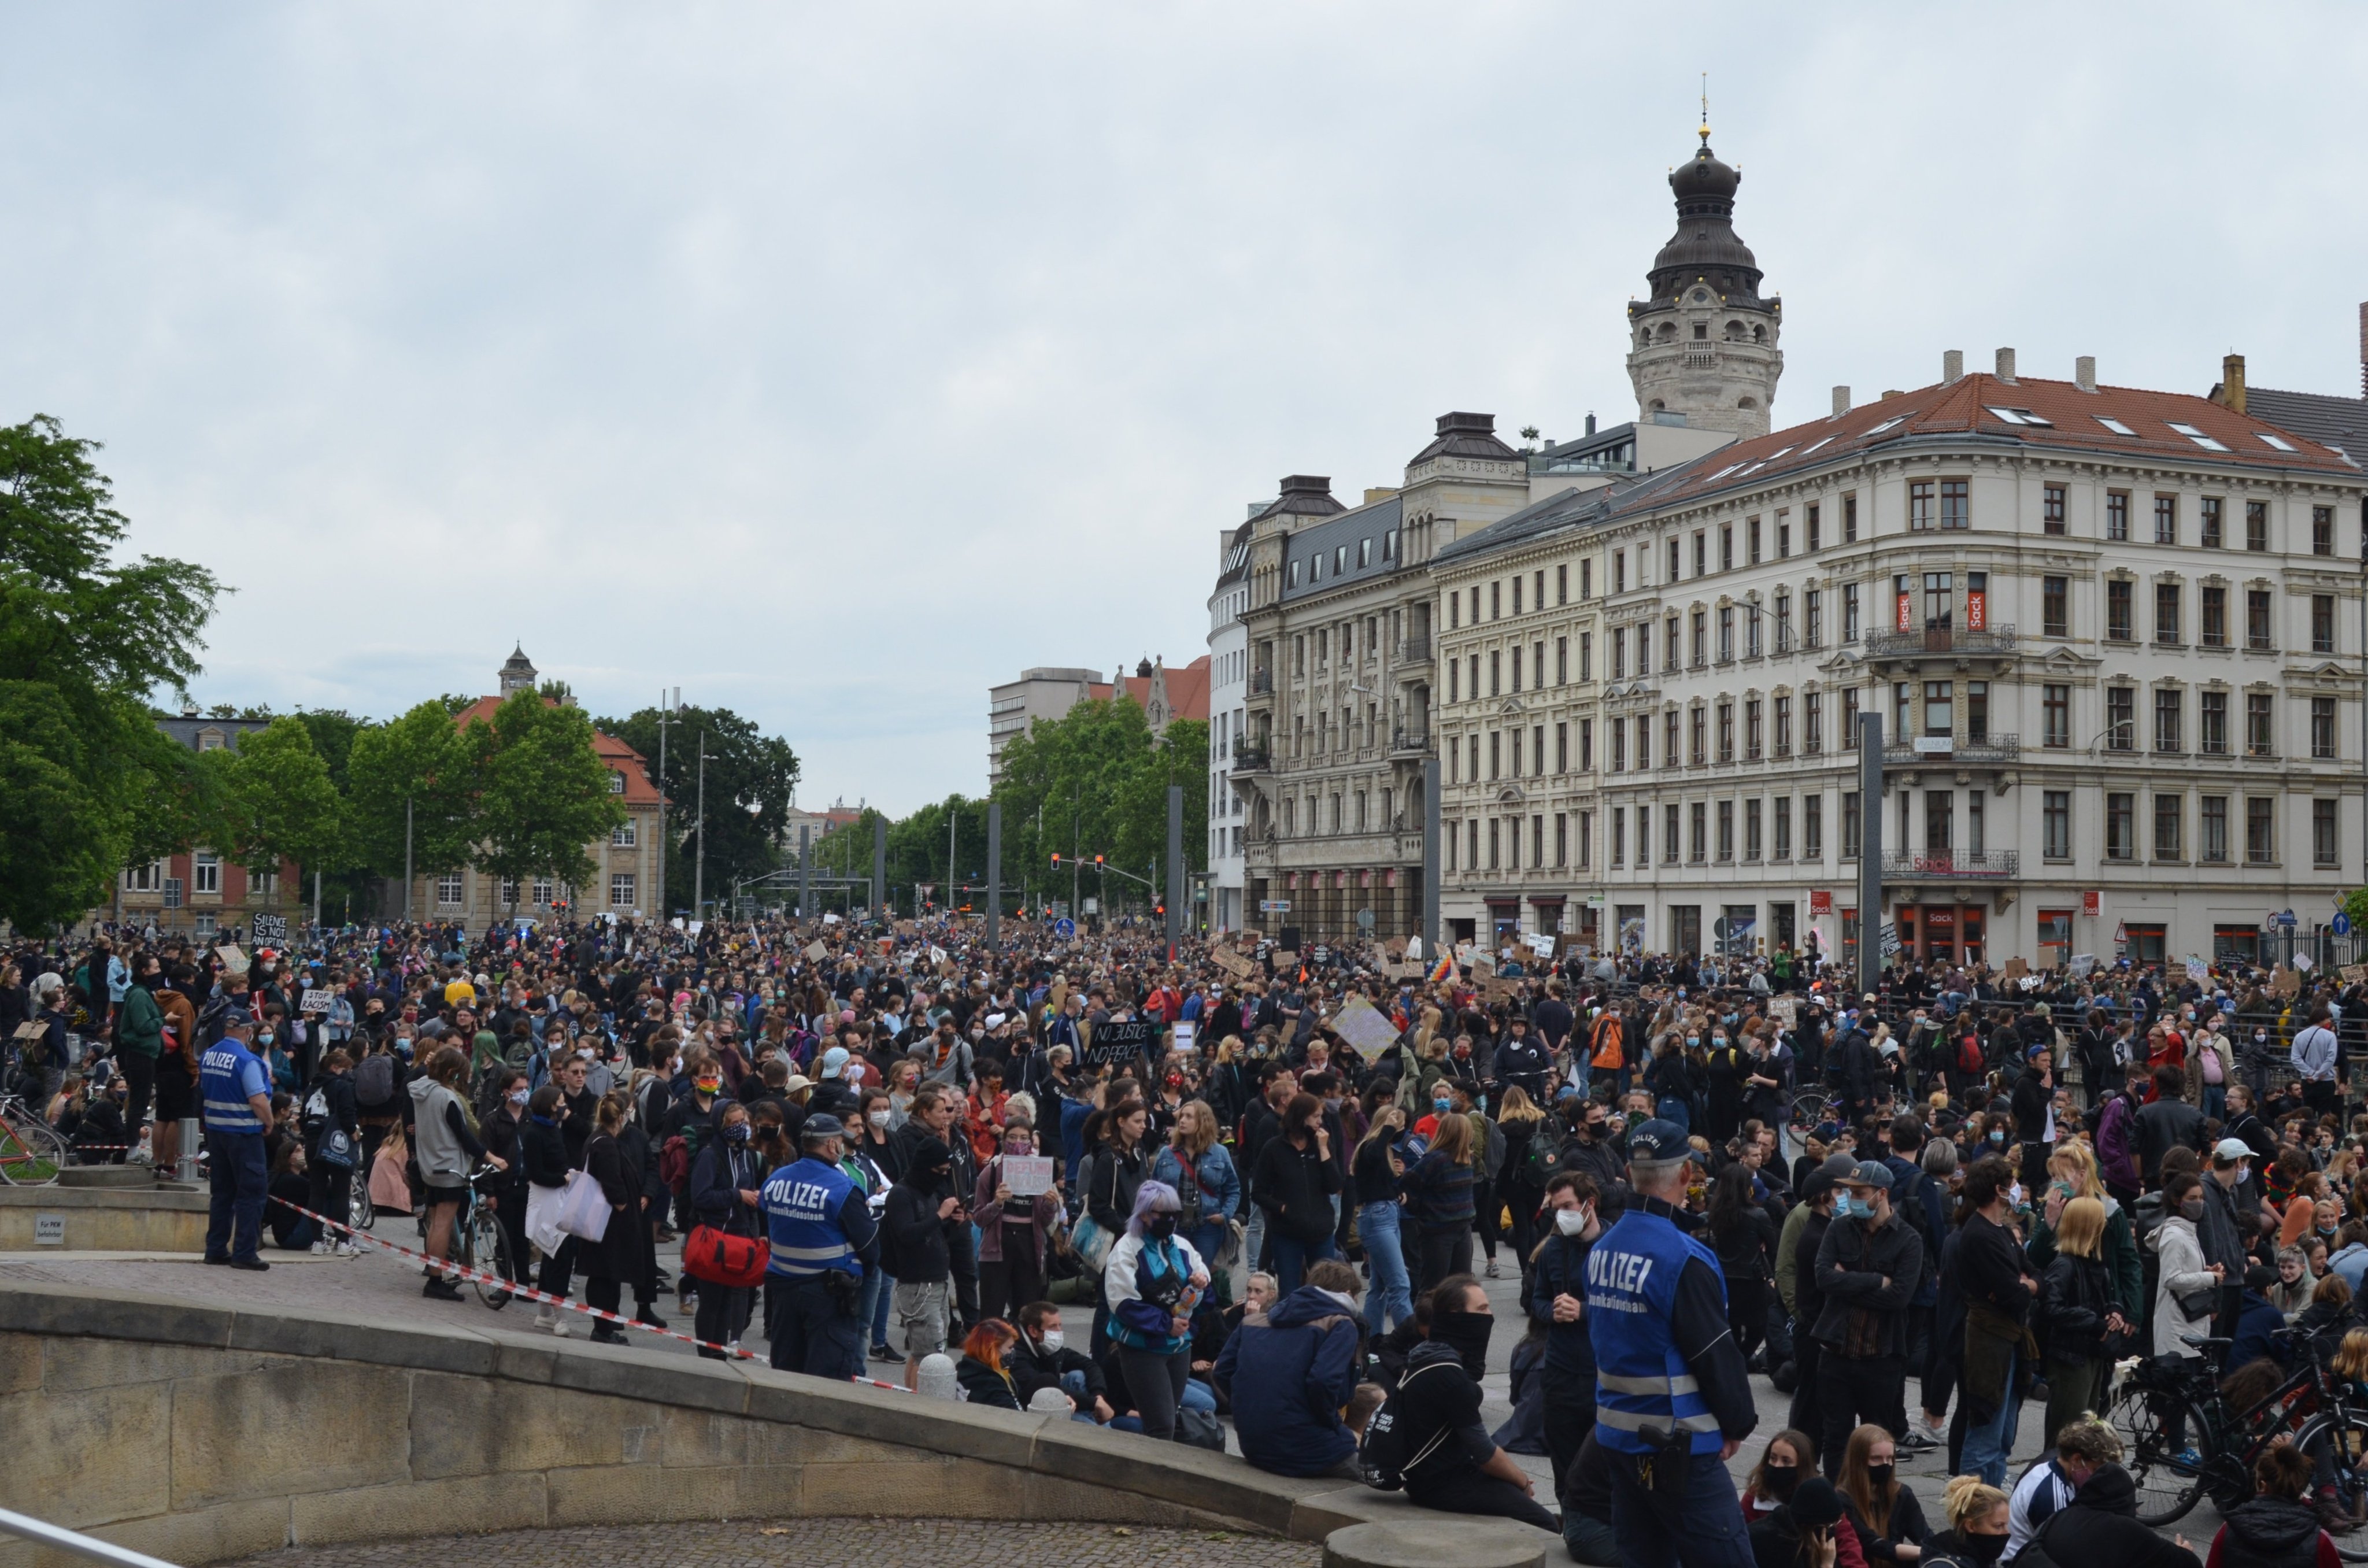   »Black Lives Matter« – auch in Leipzig | In Leipzig gingen die Menschen am Wochenende auf die Straße gegen rassistische Polizeigewalt. Wir haben nach ihren Beweggründen gefragt  